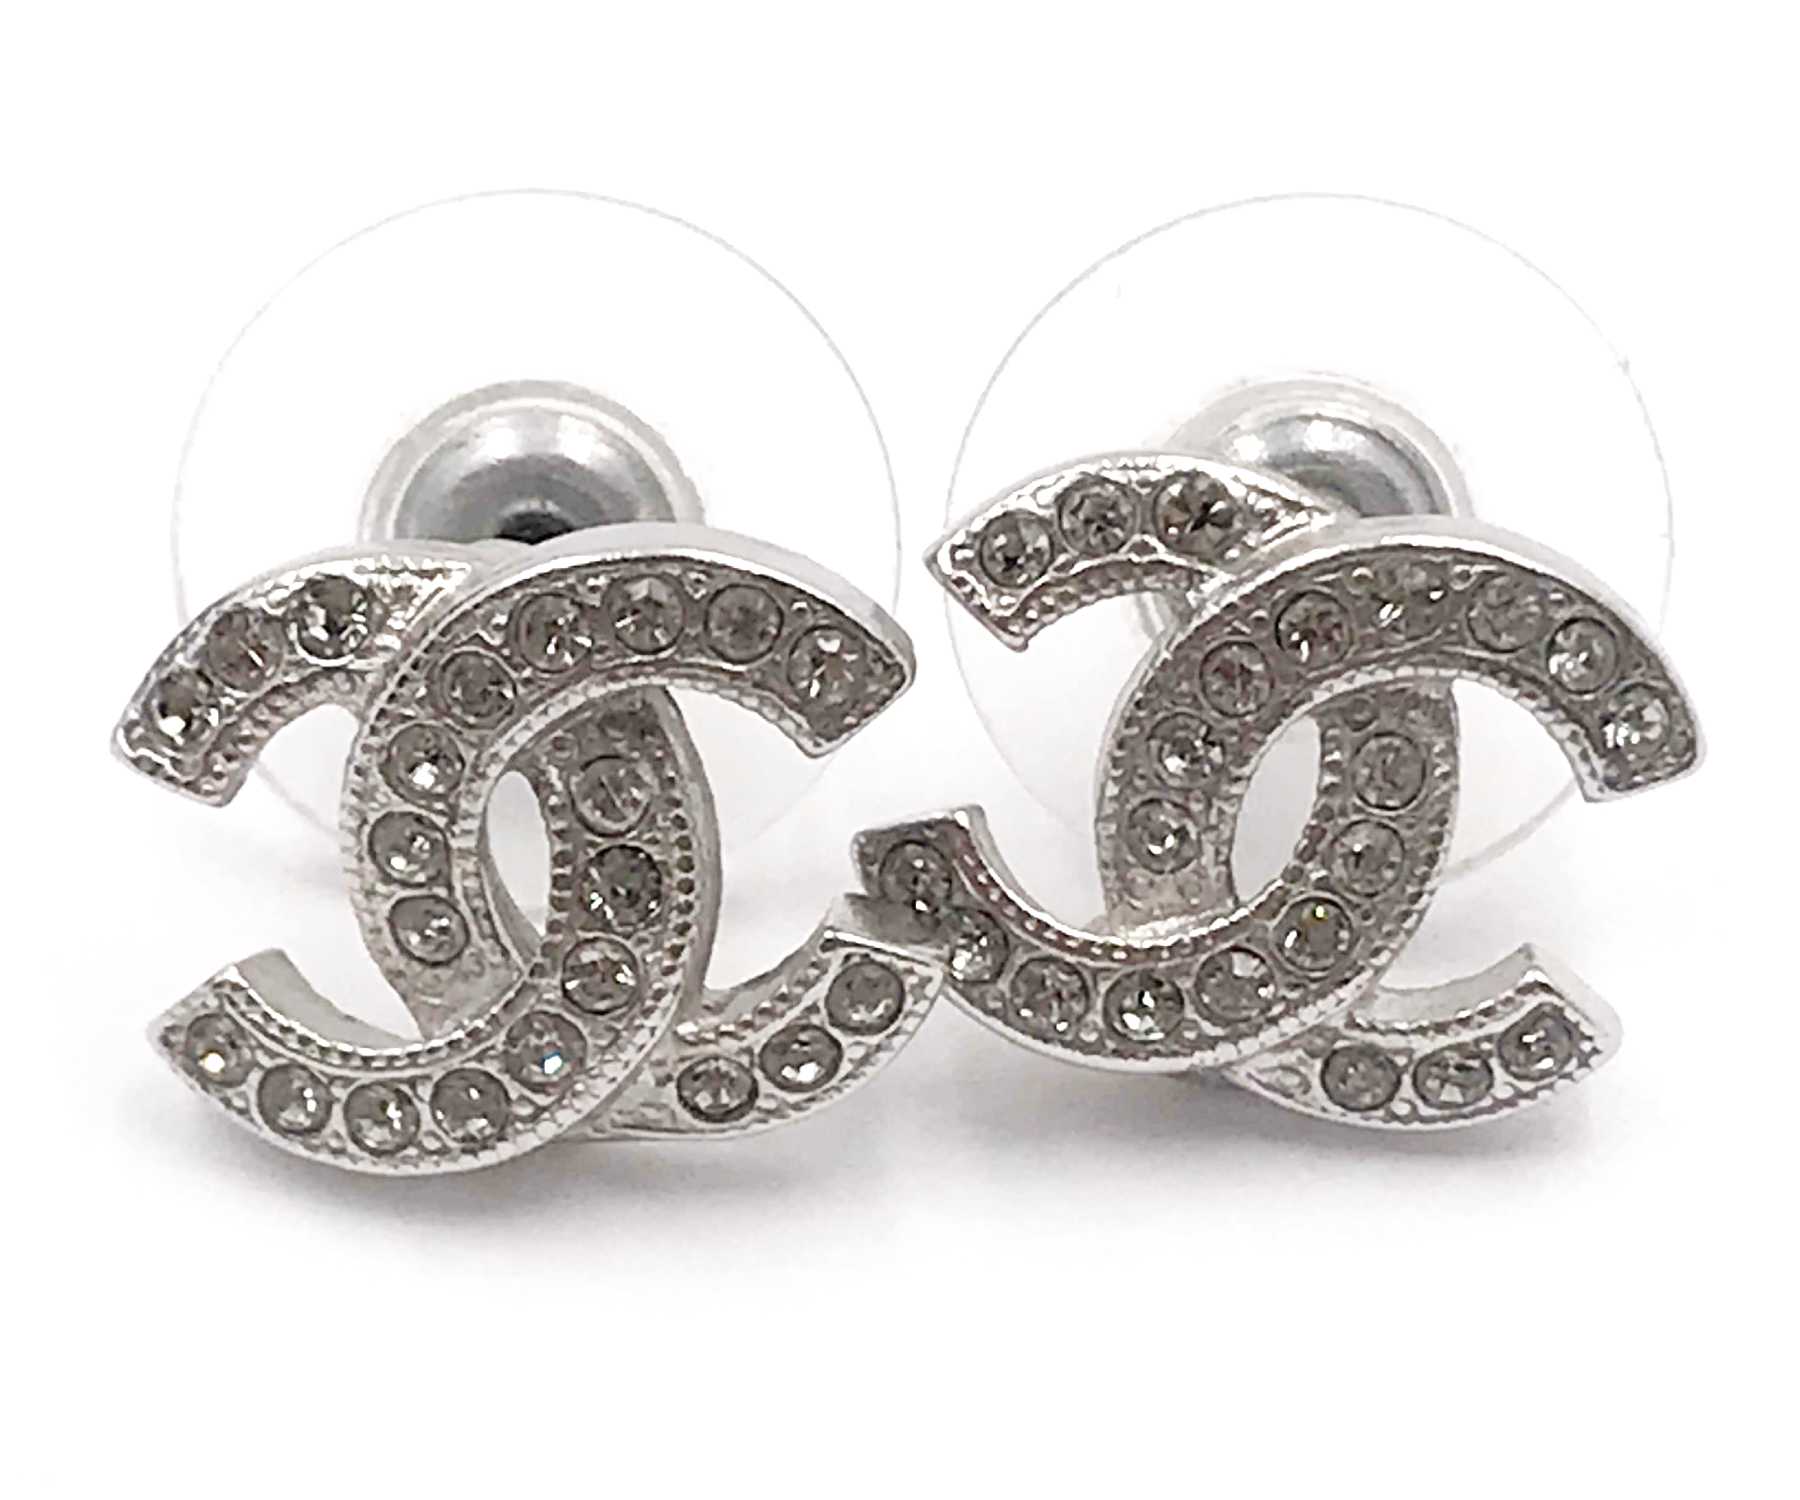 sterling silver chanel earrings pearl